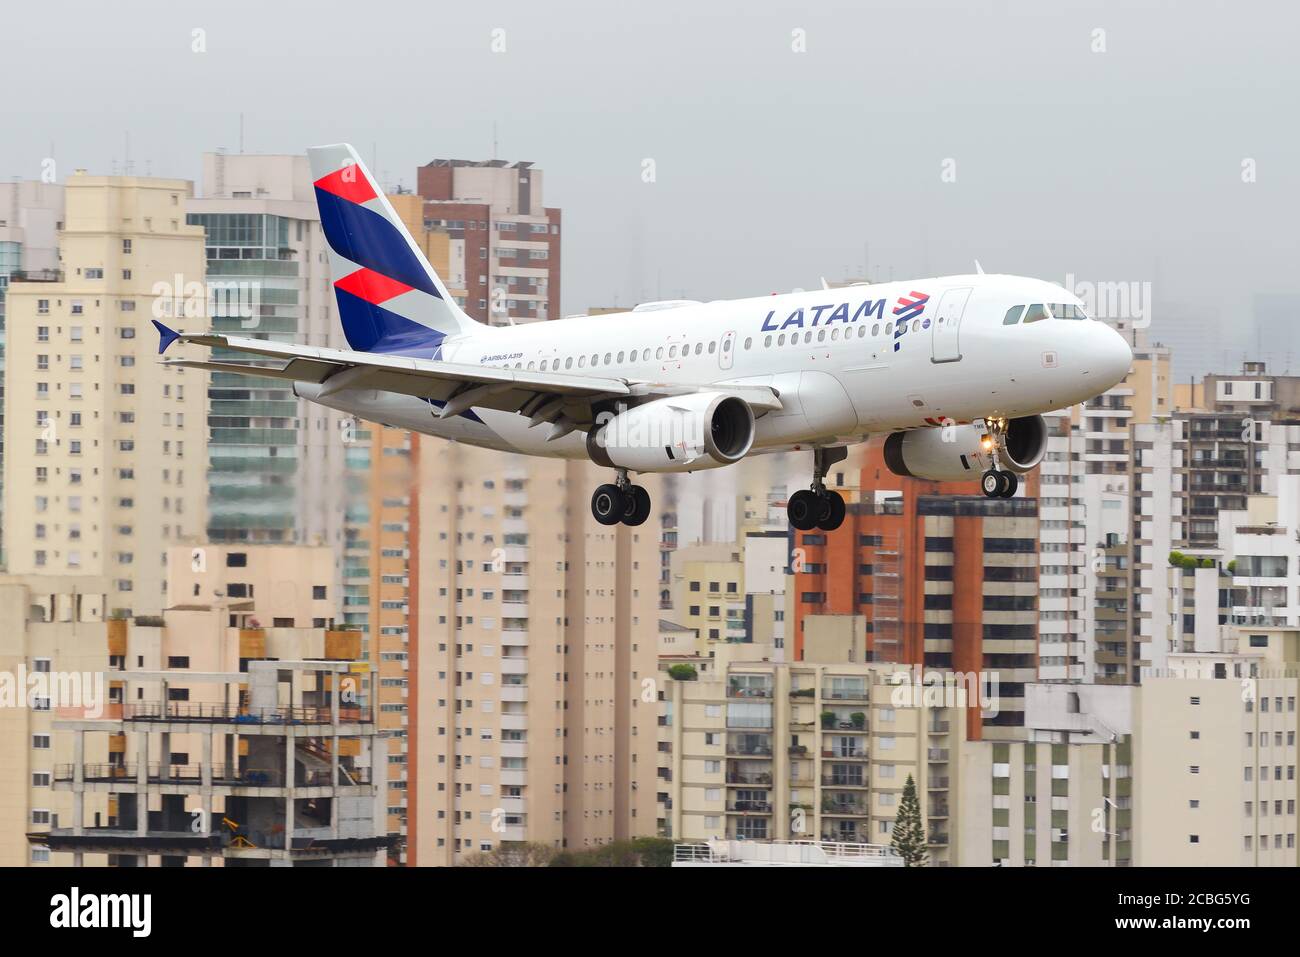 LATAM Airlines Airbus A319 sull'approccio finale all'aeroporto Congonhas di San Paolo in Brasile. Atterraggio di piccoli aeromobili nell'aeroporto centrale brasiliano. Foto Stock